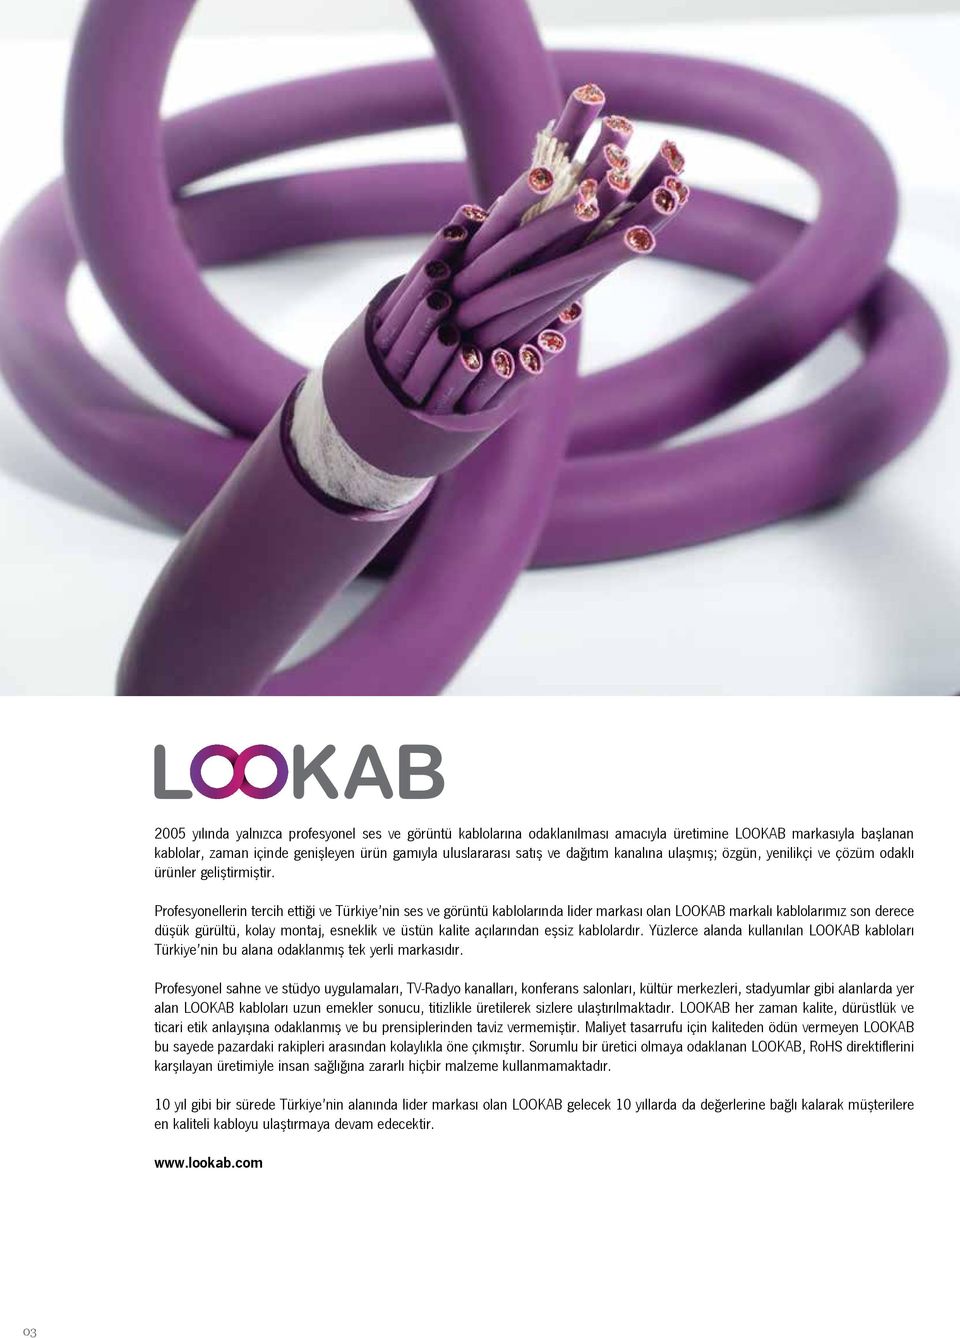 Profesyonellerin tercih ettiği ve Türkiye nin ses ve görüntü kablolarında lider markası olan LOOKAB markalı kablolarımız son derece düşük gürültü, kolay montaj, esneklik ve üstün kalite açılarından